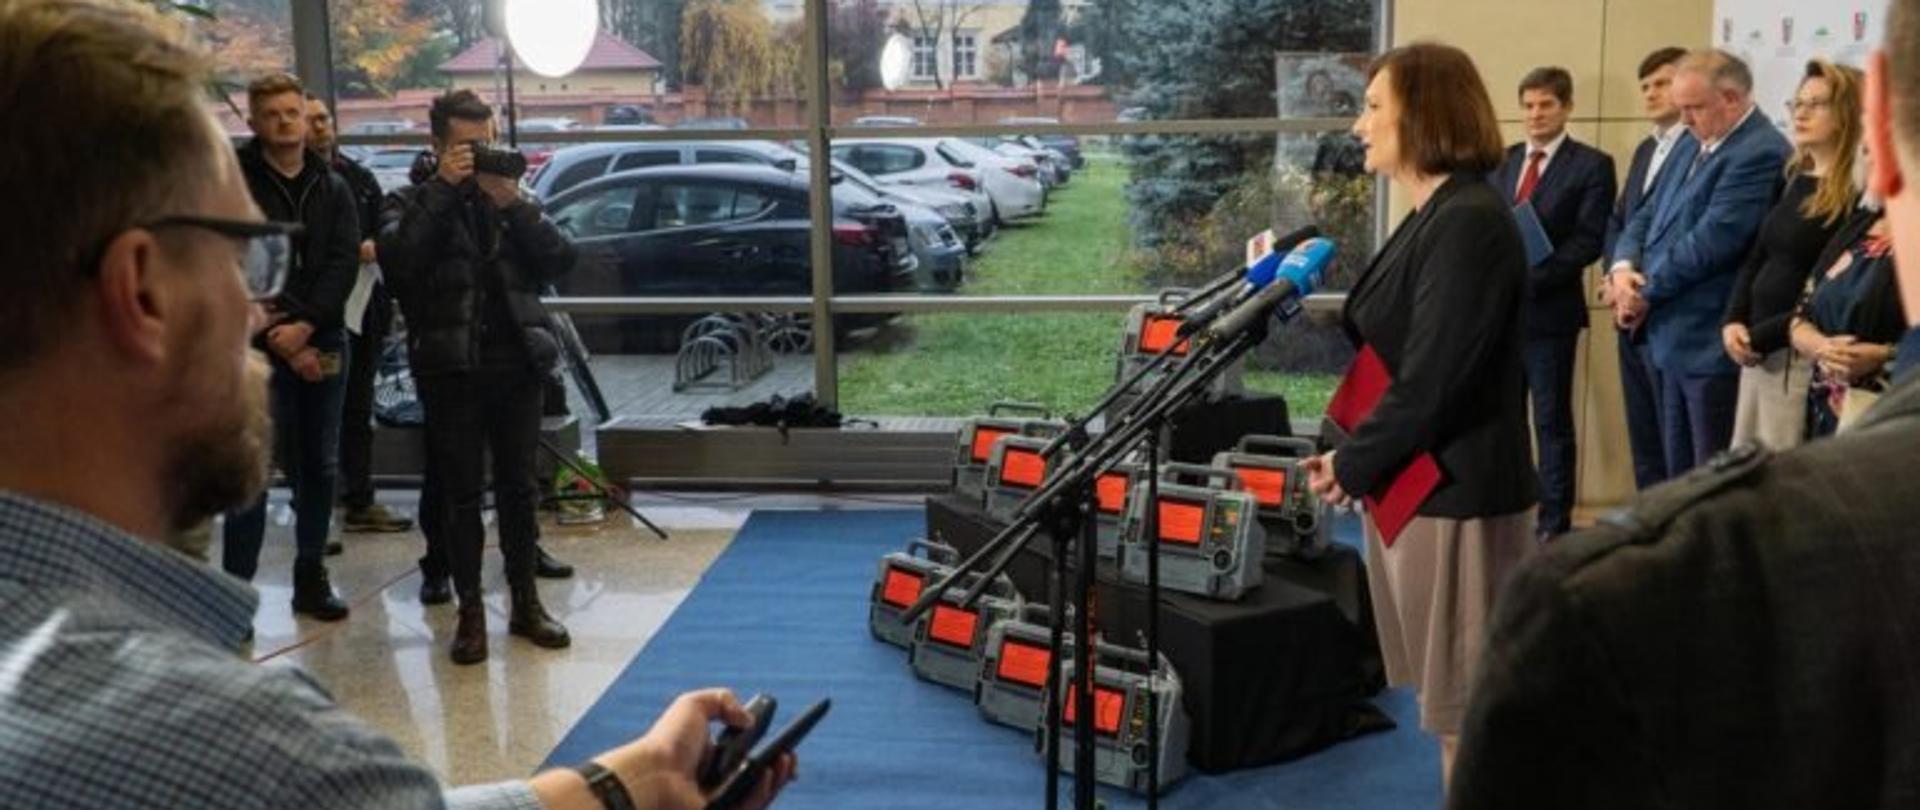 Wojewoda podkarpacki Ewa Leniart zabiera głos podczas konferencji prasowej w Urzędzie Marszałkowskim w Rzeszowie. W tle dziennikarze i inni uczestnicy konferencji.